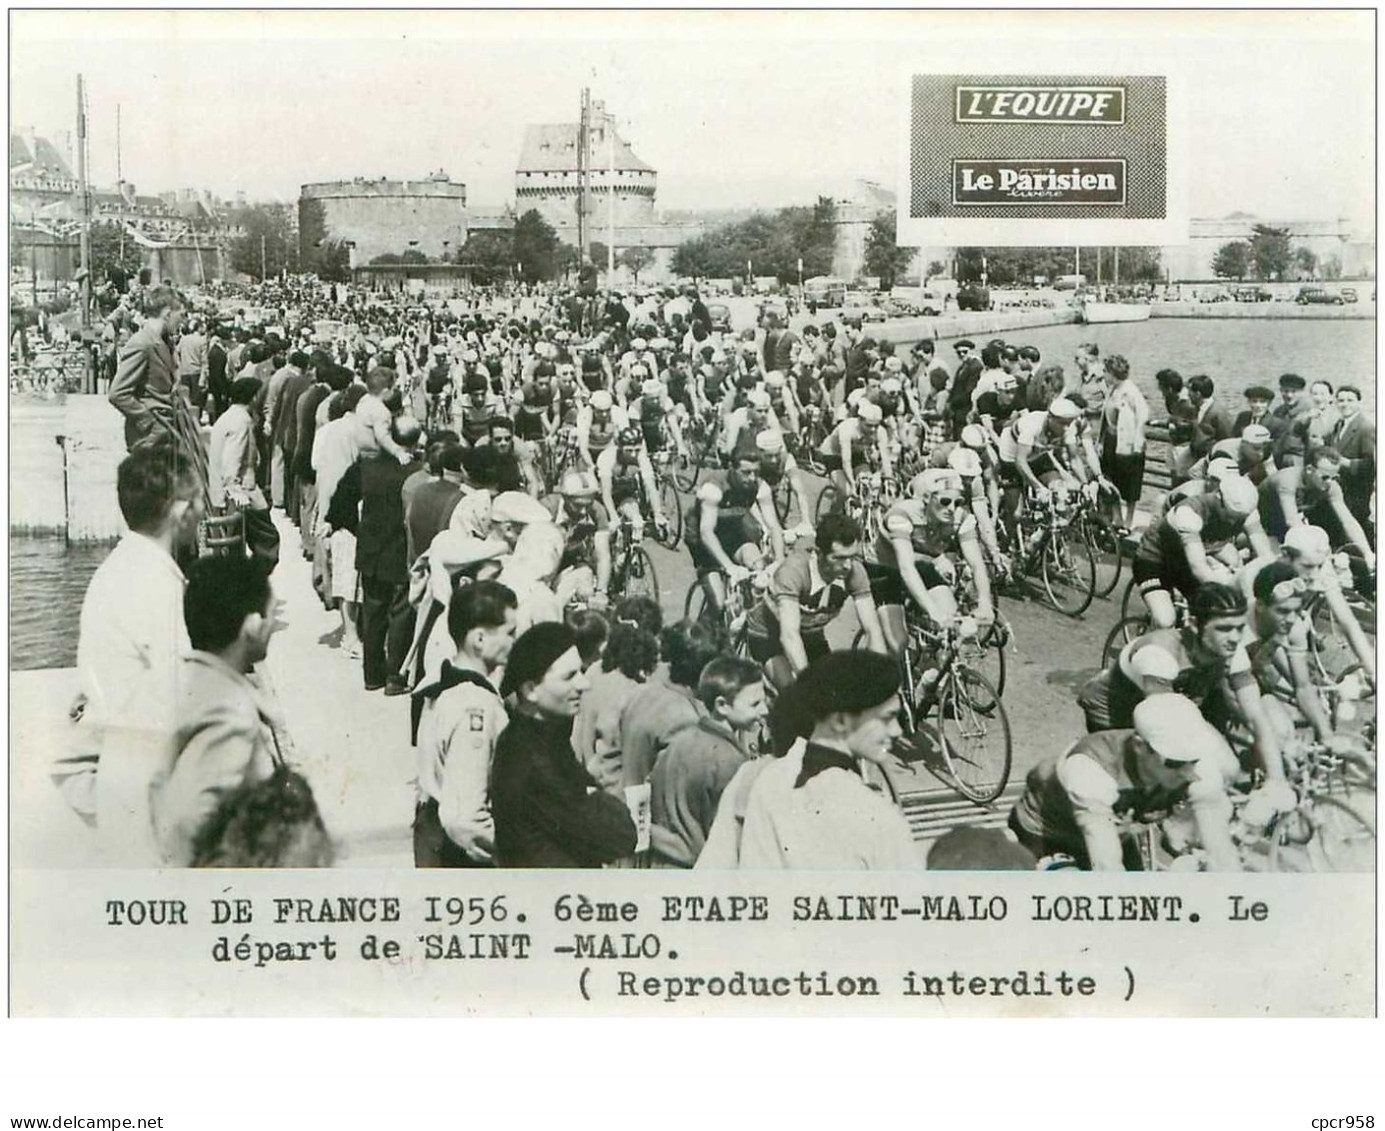 PHOTO DE PRESSE ORIGINALE TOUR DE FRANCE 1956.20X15.6eme ETAPE ST MALO LORIENT.LE DEPART DE ST MALO.n°18664 - Wielrennen